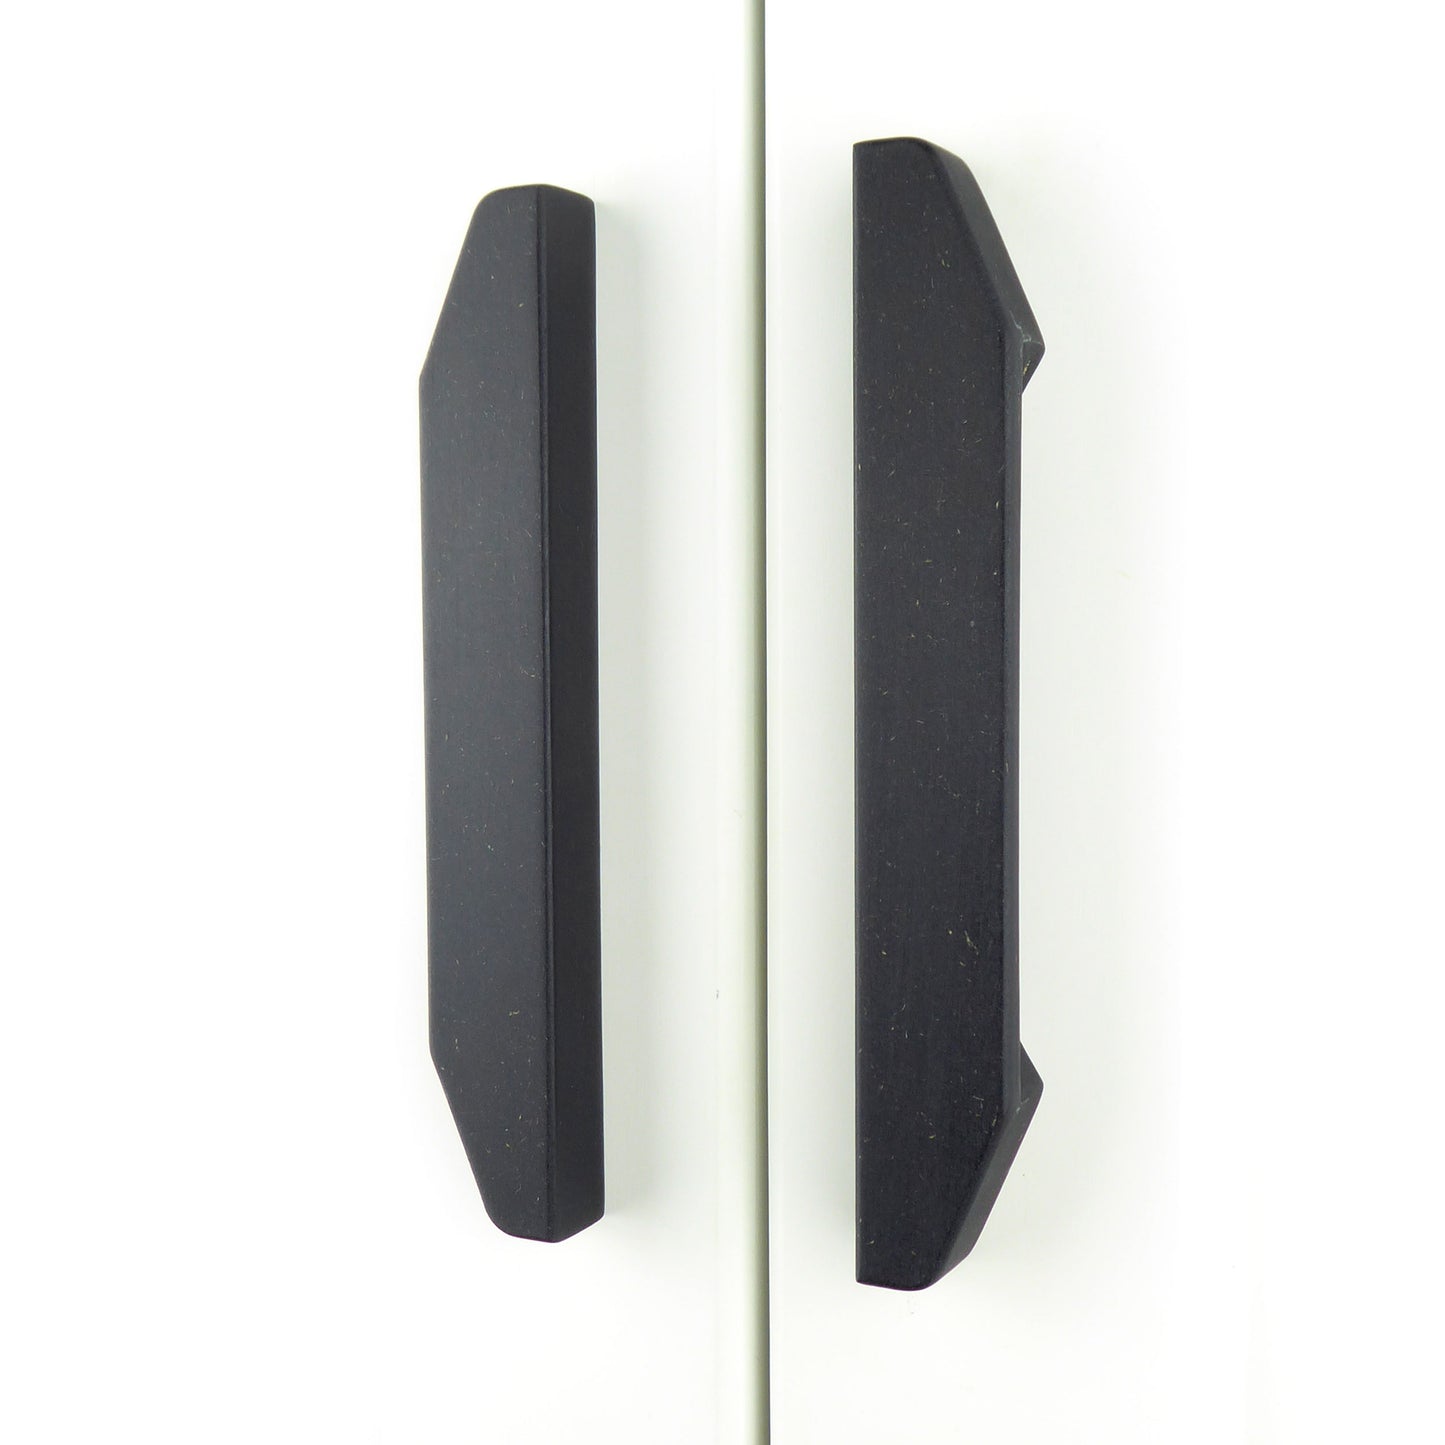 matt black long wardrobe handles